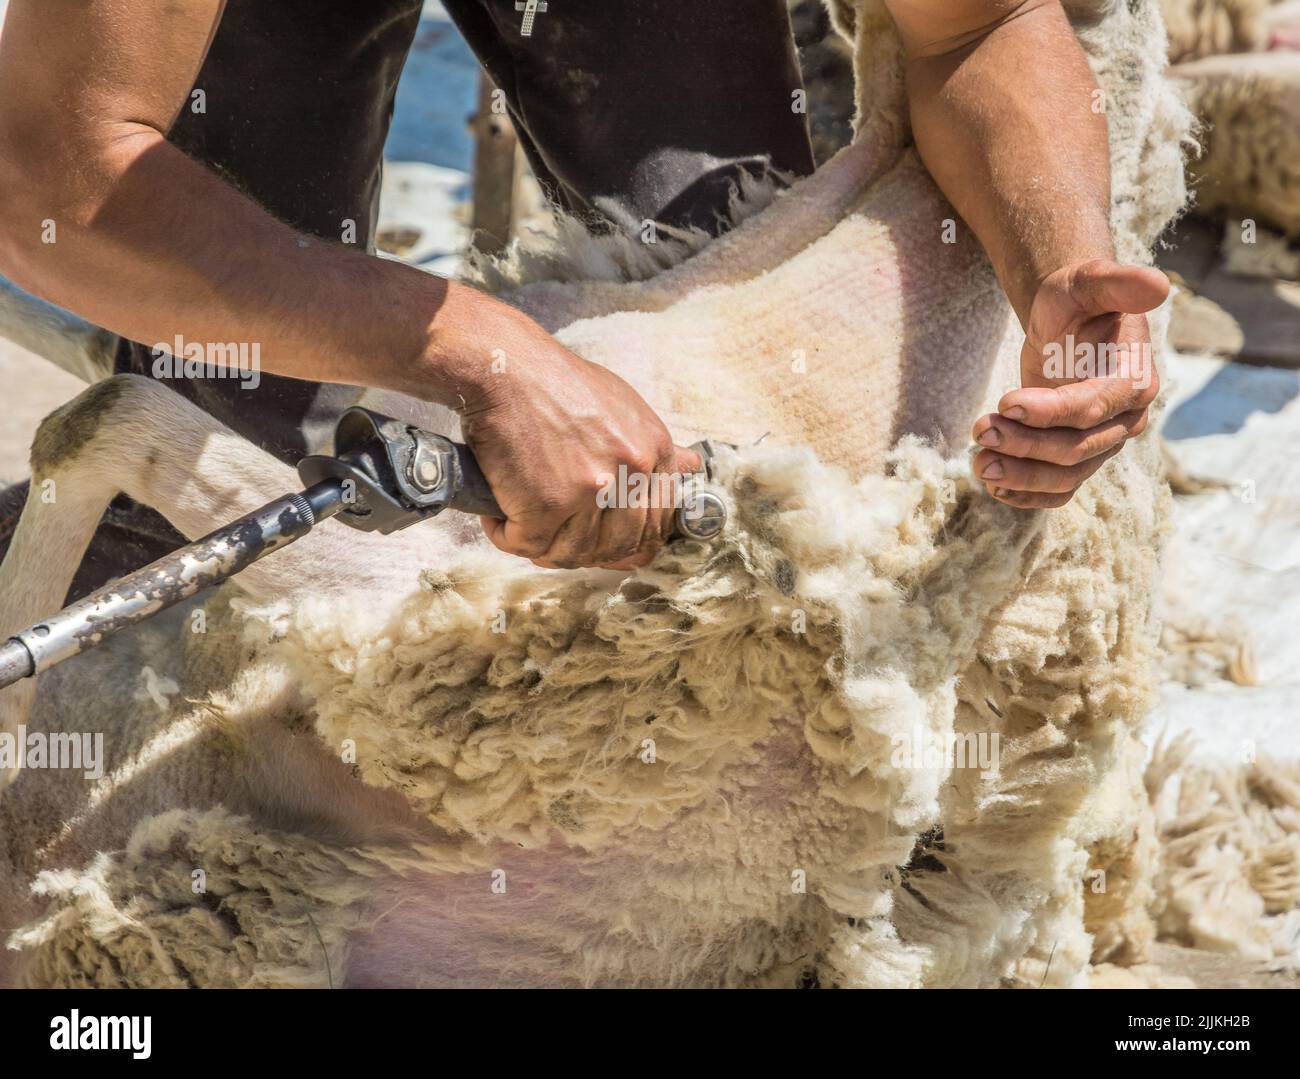 Mann verwenden Clippers, um Schaffloeces bei einem Schaf scheren Scheren Scheren. Schafe scheren im Frühjahr Stockfoto